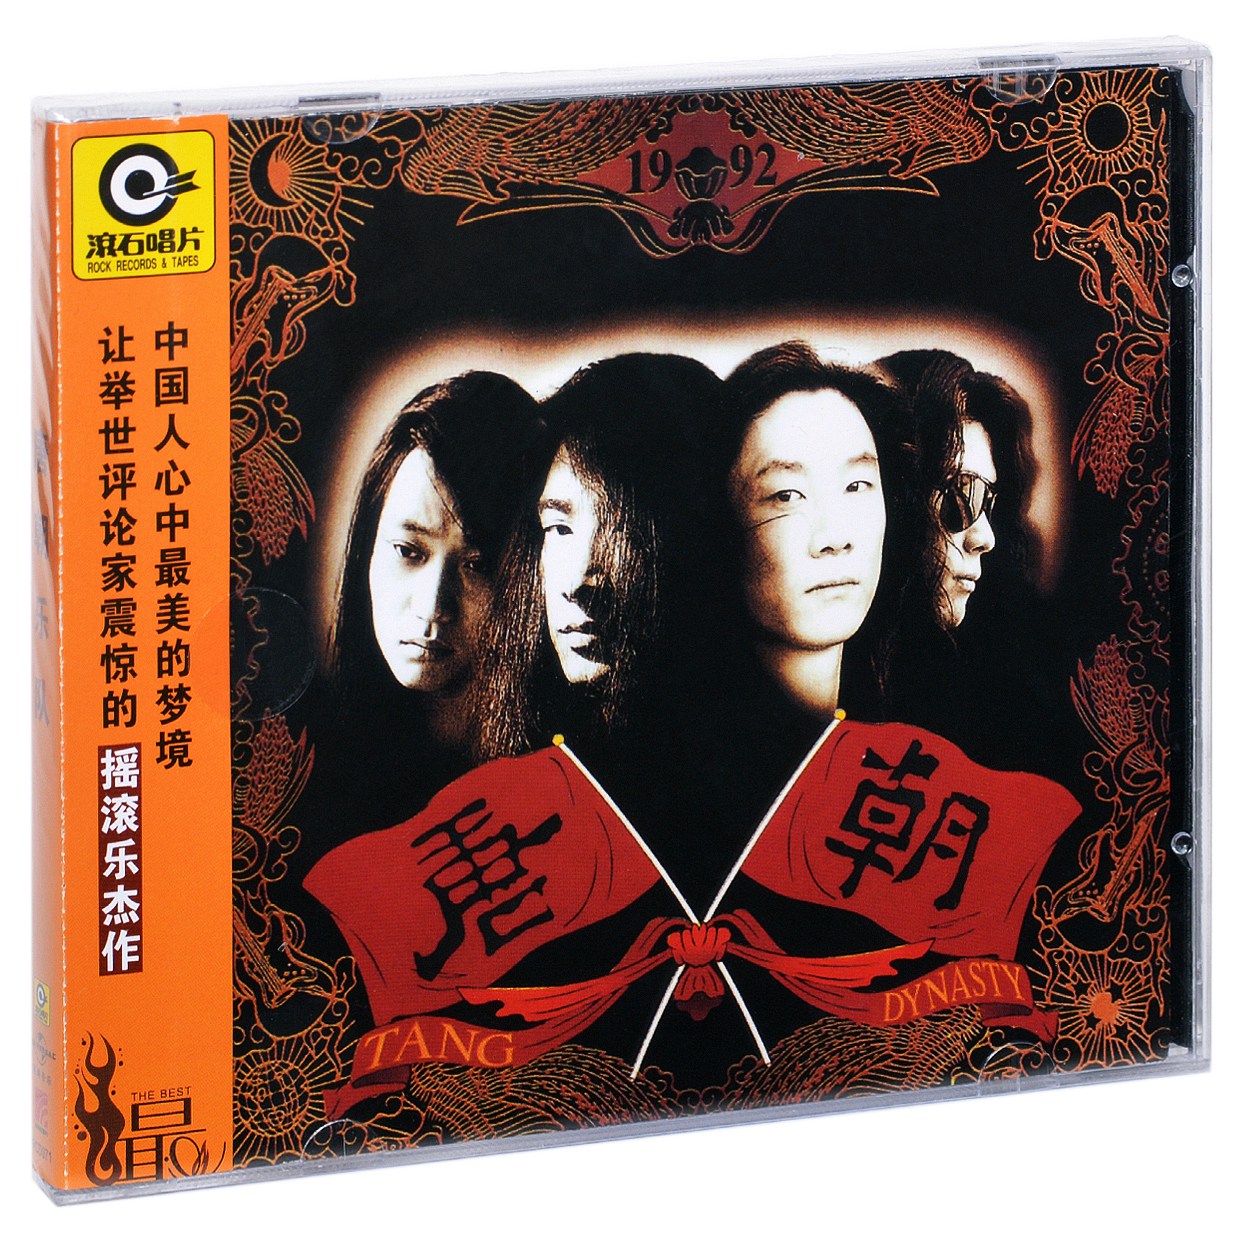 正版滚石系列 唐朝乐队 同名专辑 1992专辑拍 CD+歌词本